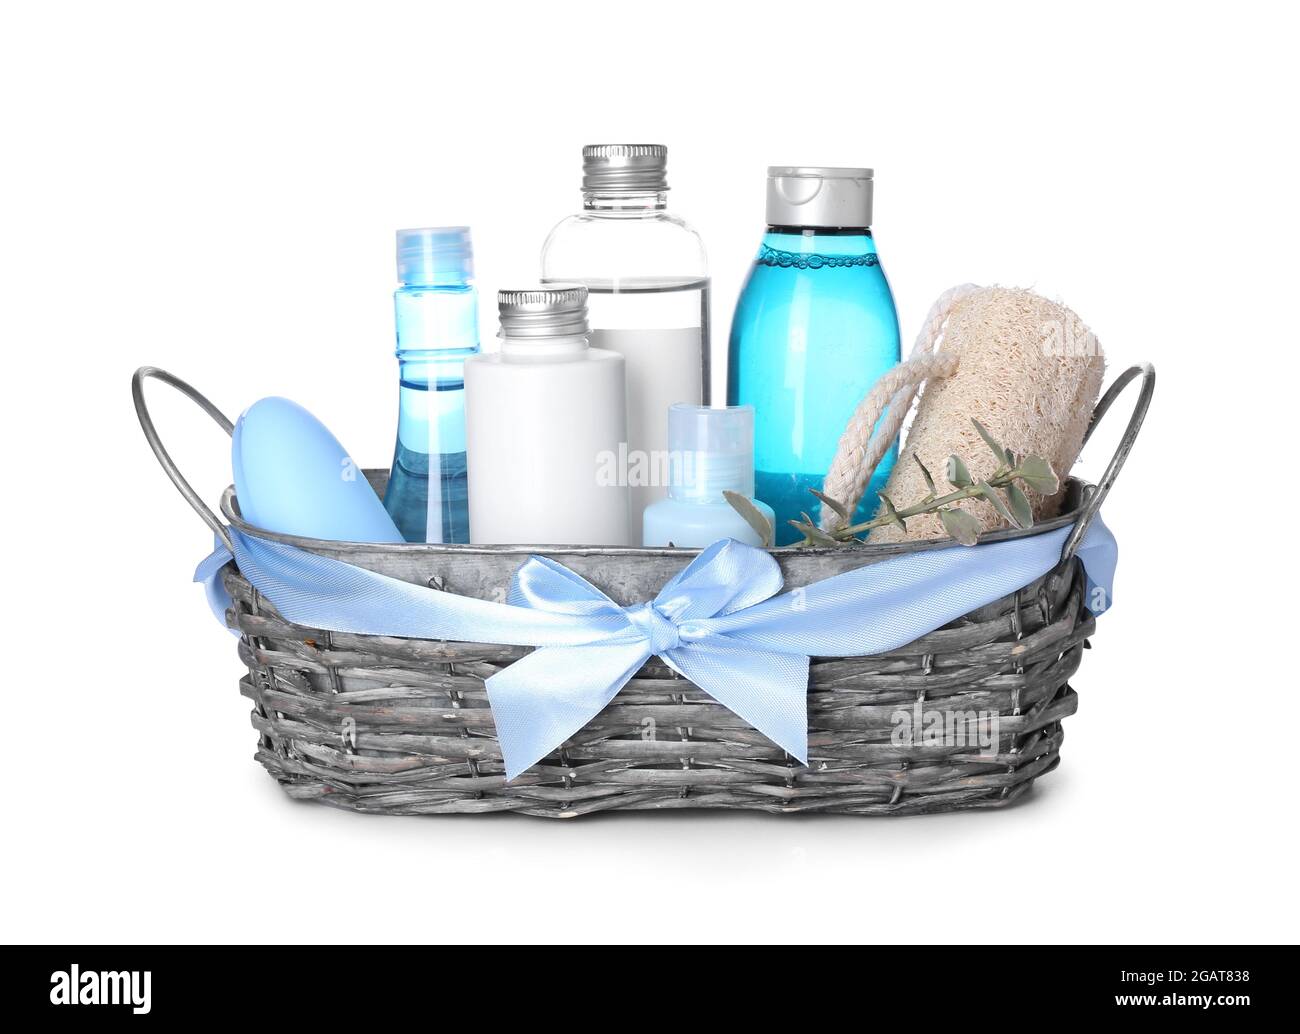 Geschenkkorb mit Kosmetik und Schwamm auf weißem Hintergrund  Stockfotografie - Alamy